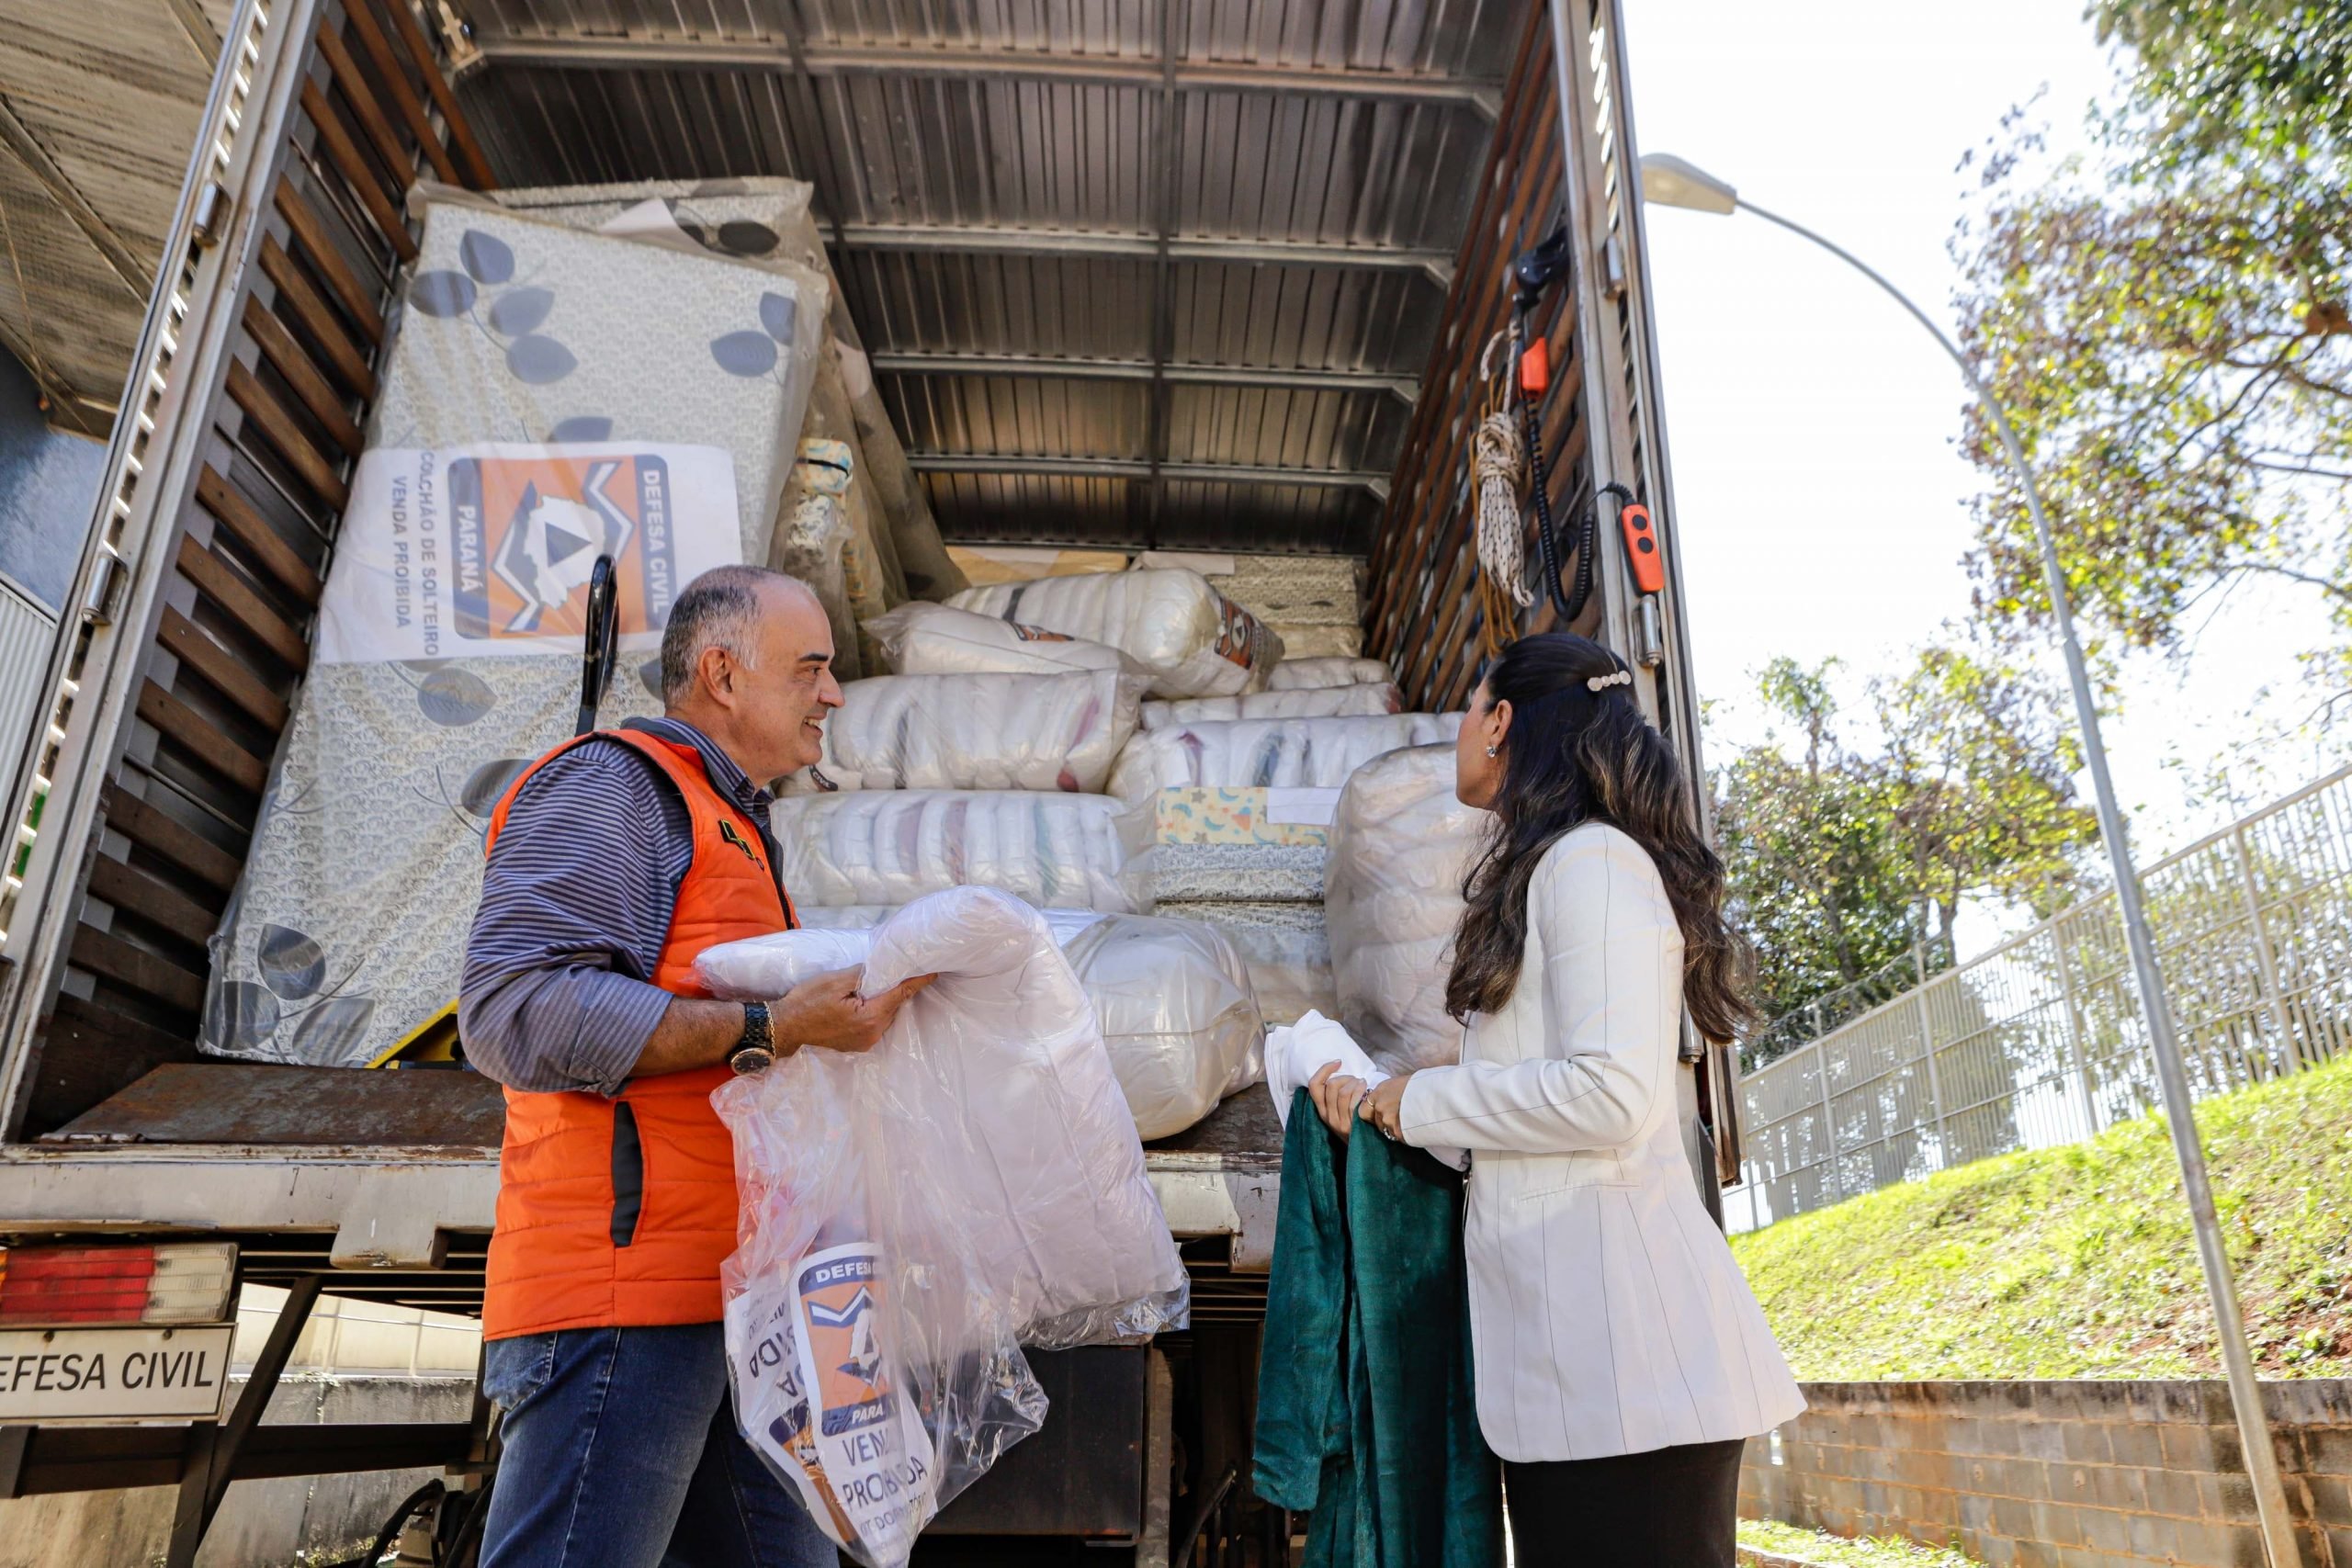 Tenente-coronel da defesa civil, usando um colete alaranjado e a primeira-dama do Paraná utilizando um casaco branco, em frente a um caminhão cheio de donativos pronto para partir ao estado do Rio Grade do Sul.